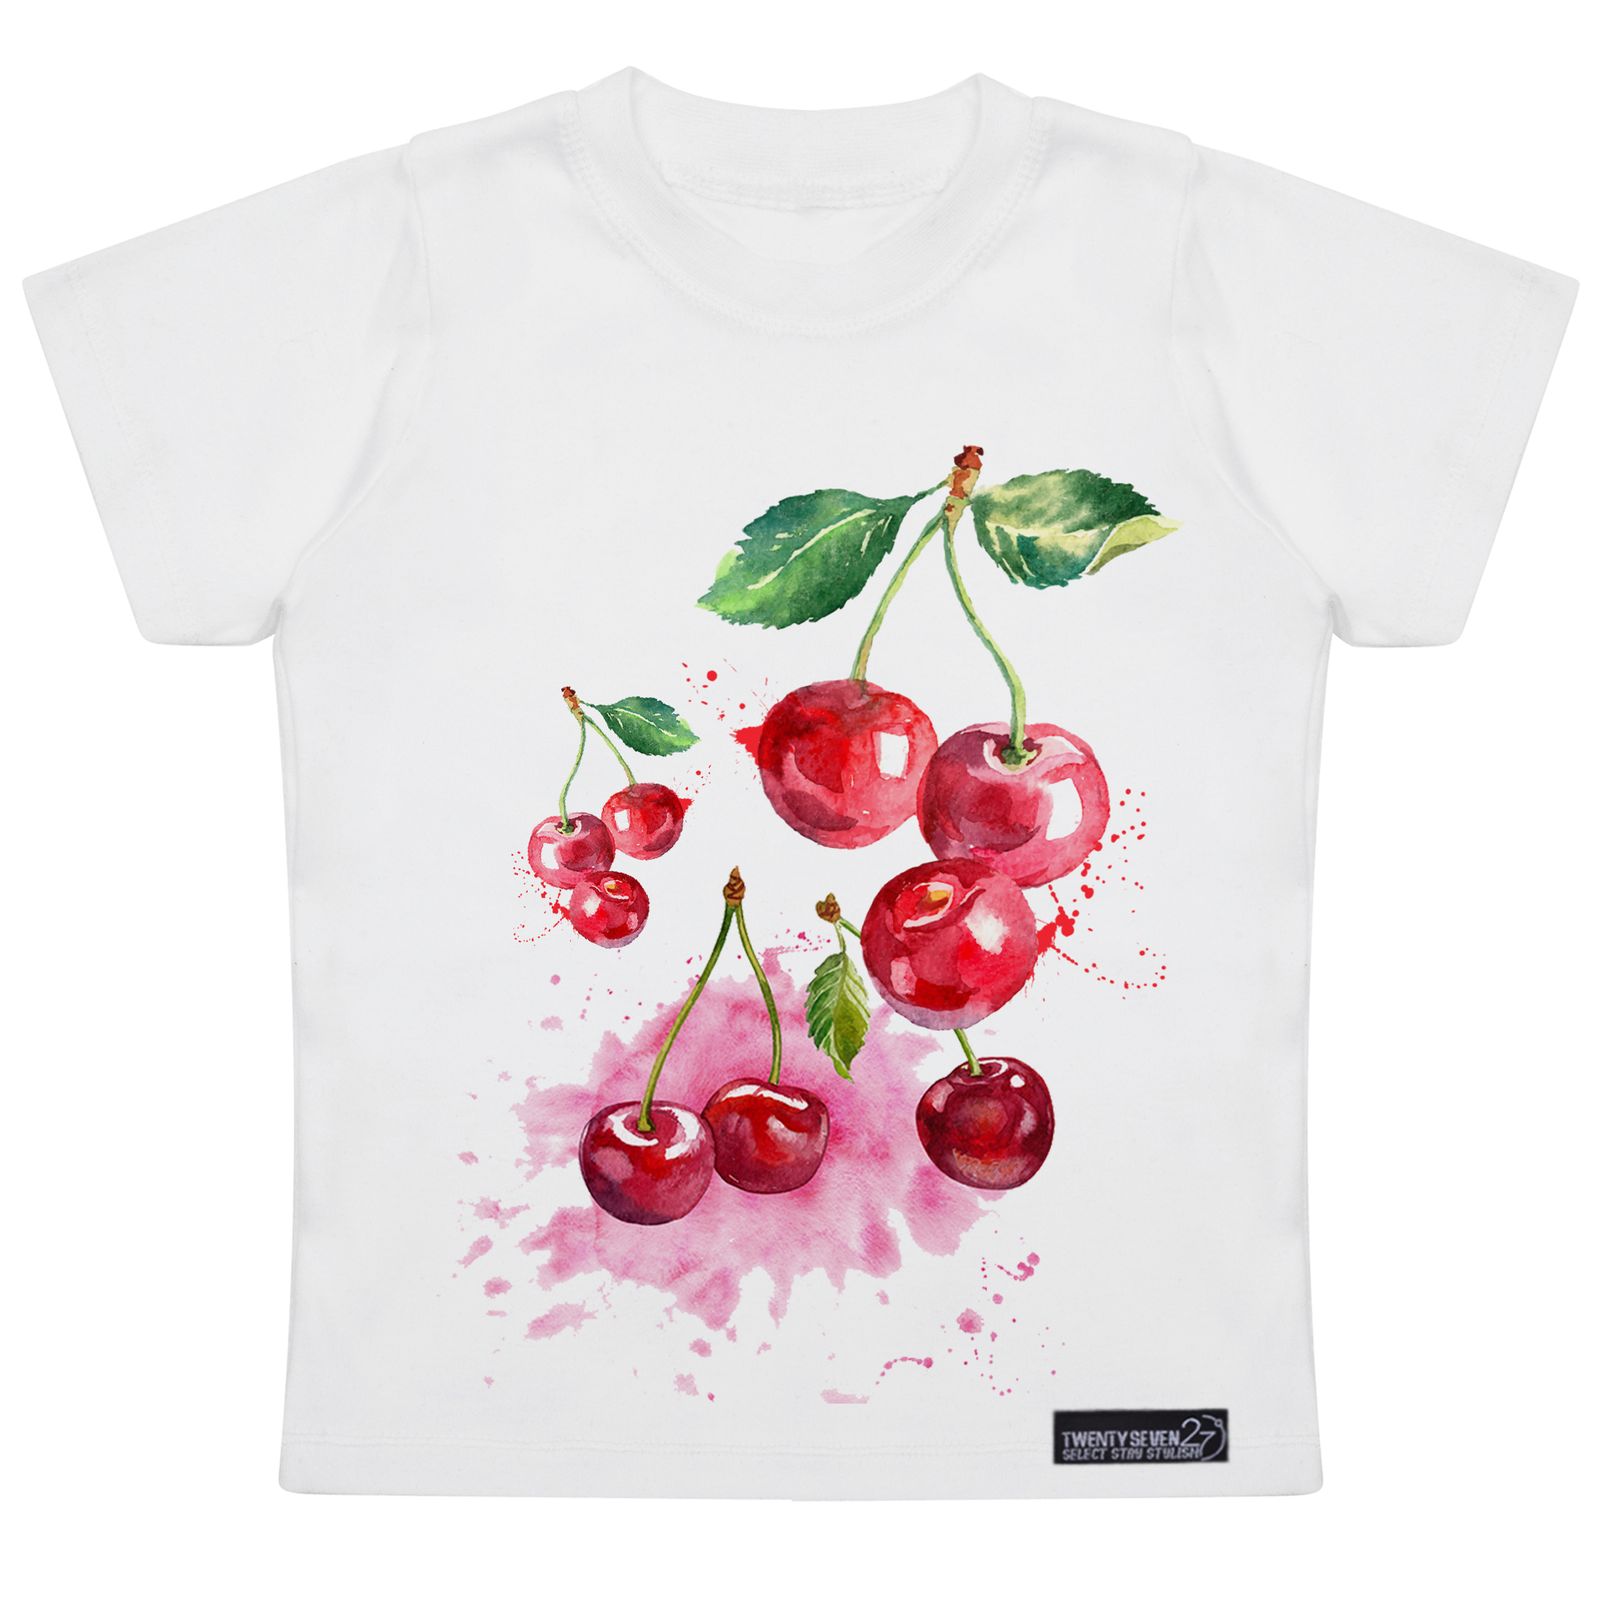 تی شرت آستین کوتاه دخترانه 27 مدل Red Cherries کد MH957 -  - 1